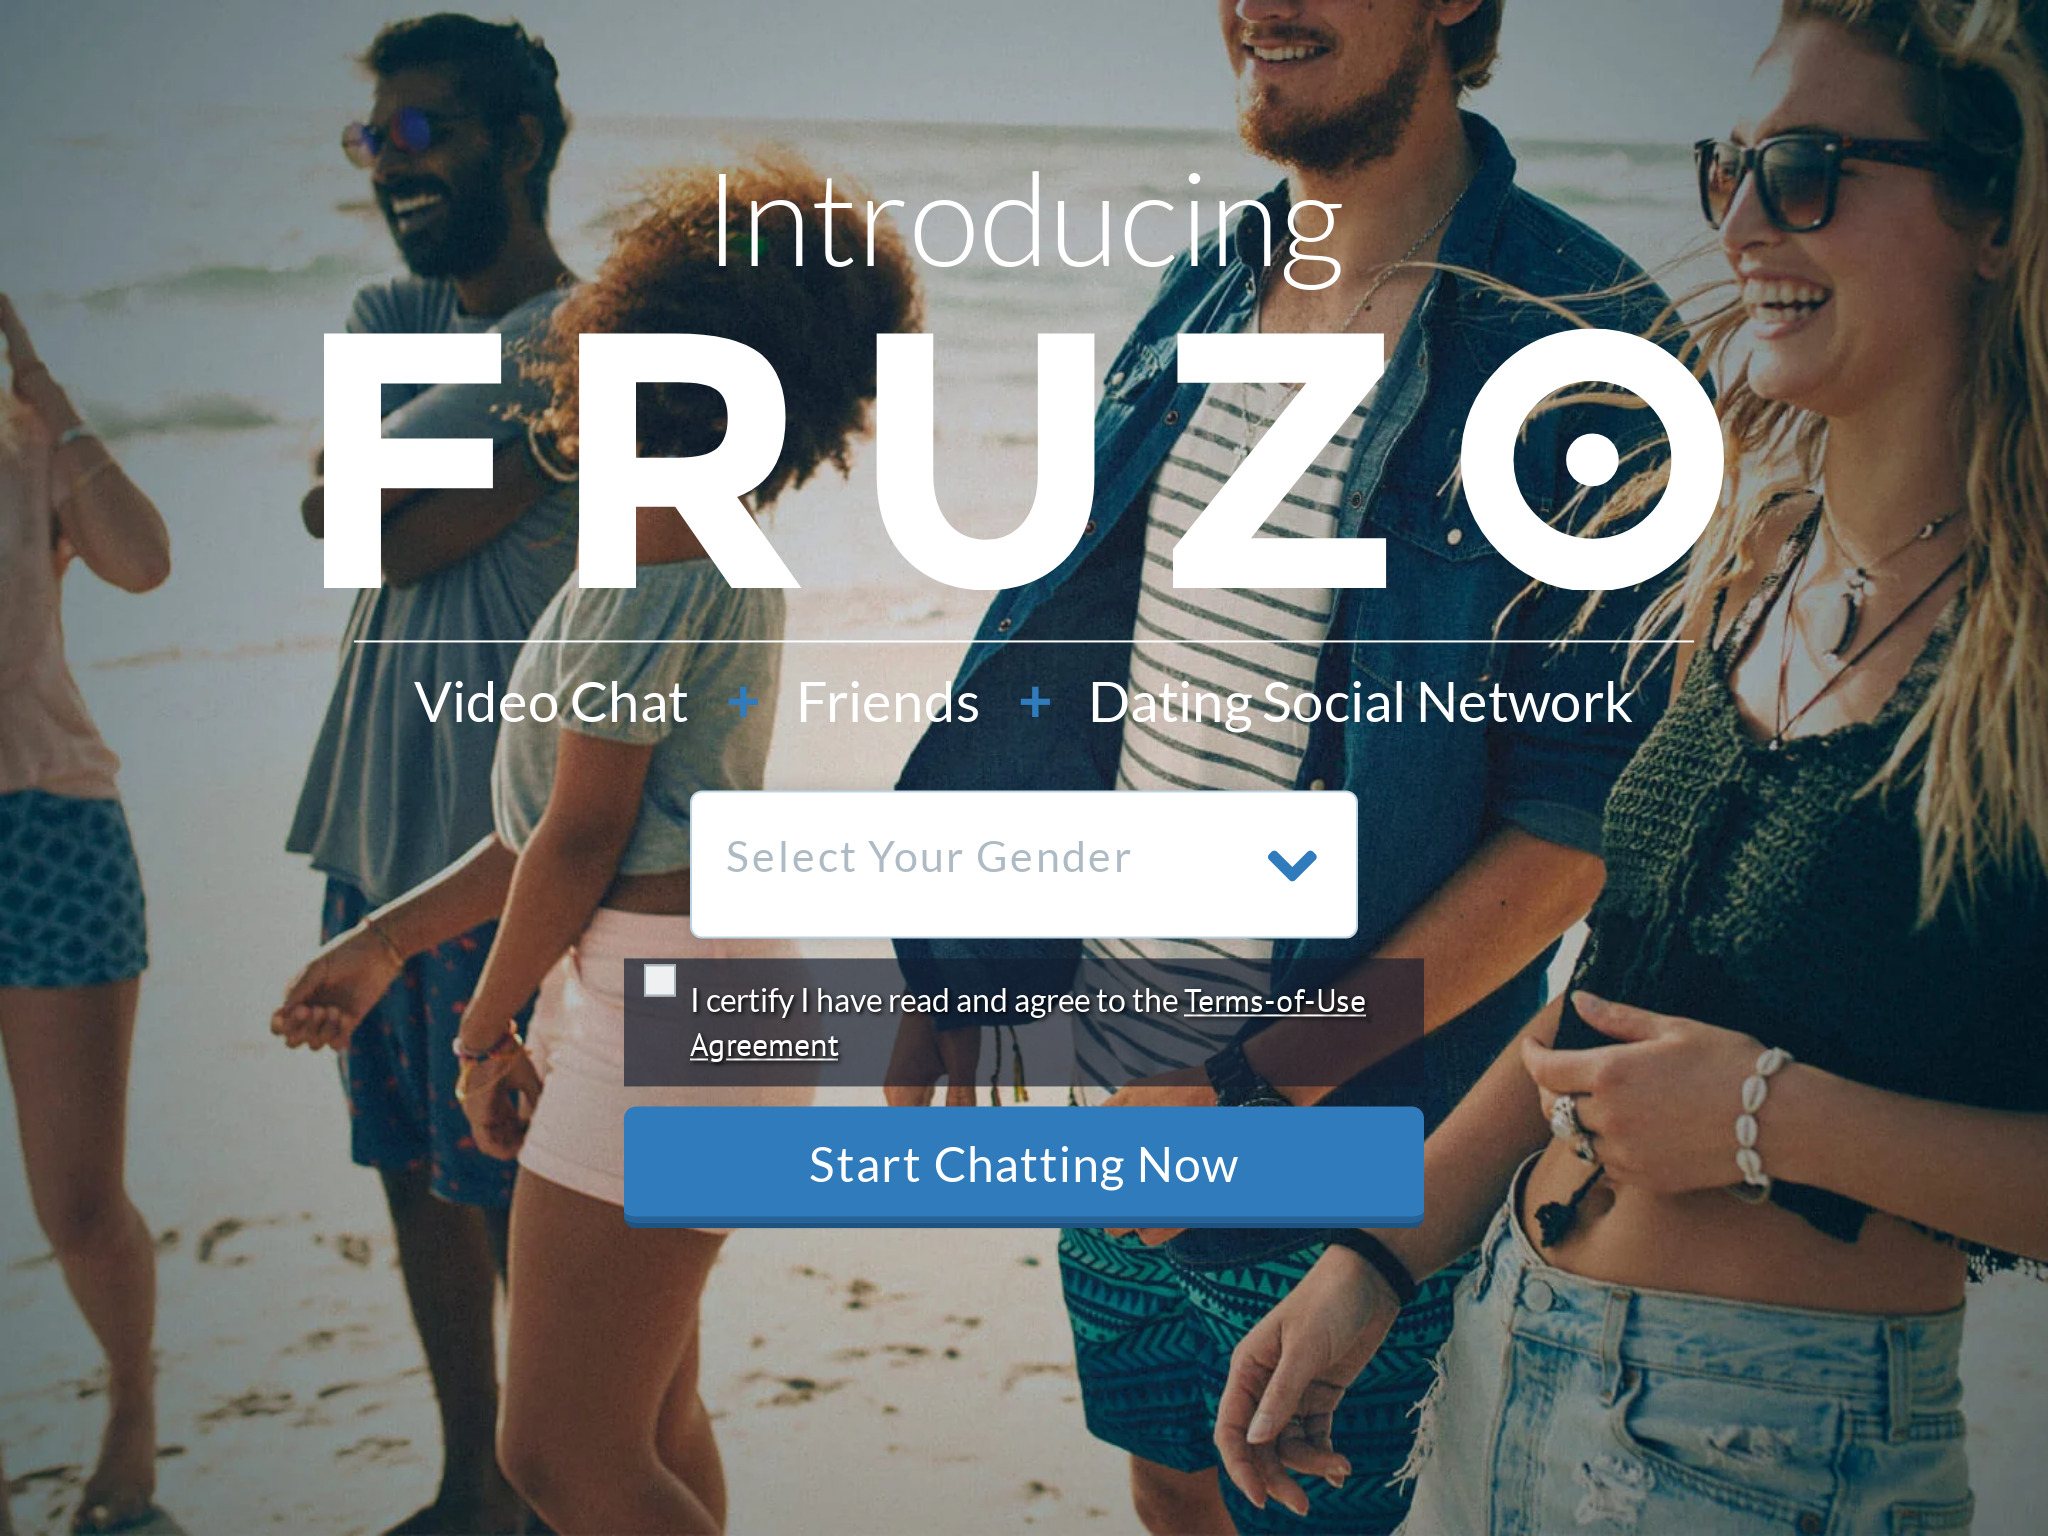 Fruzo Review: Is het een goede keuze voor online dating in 2023?